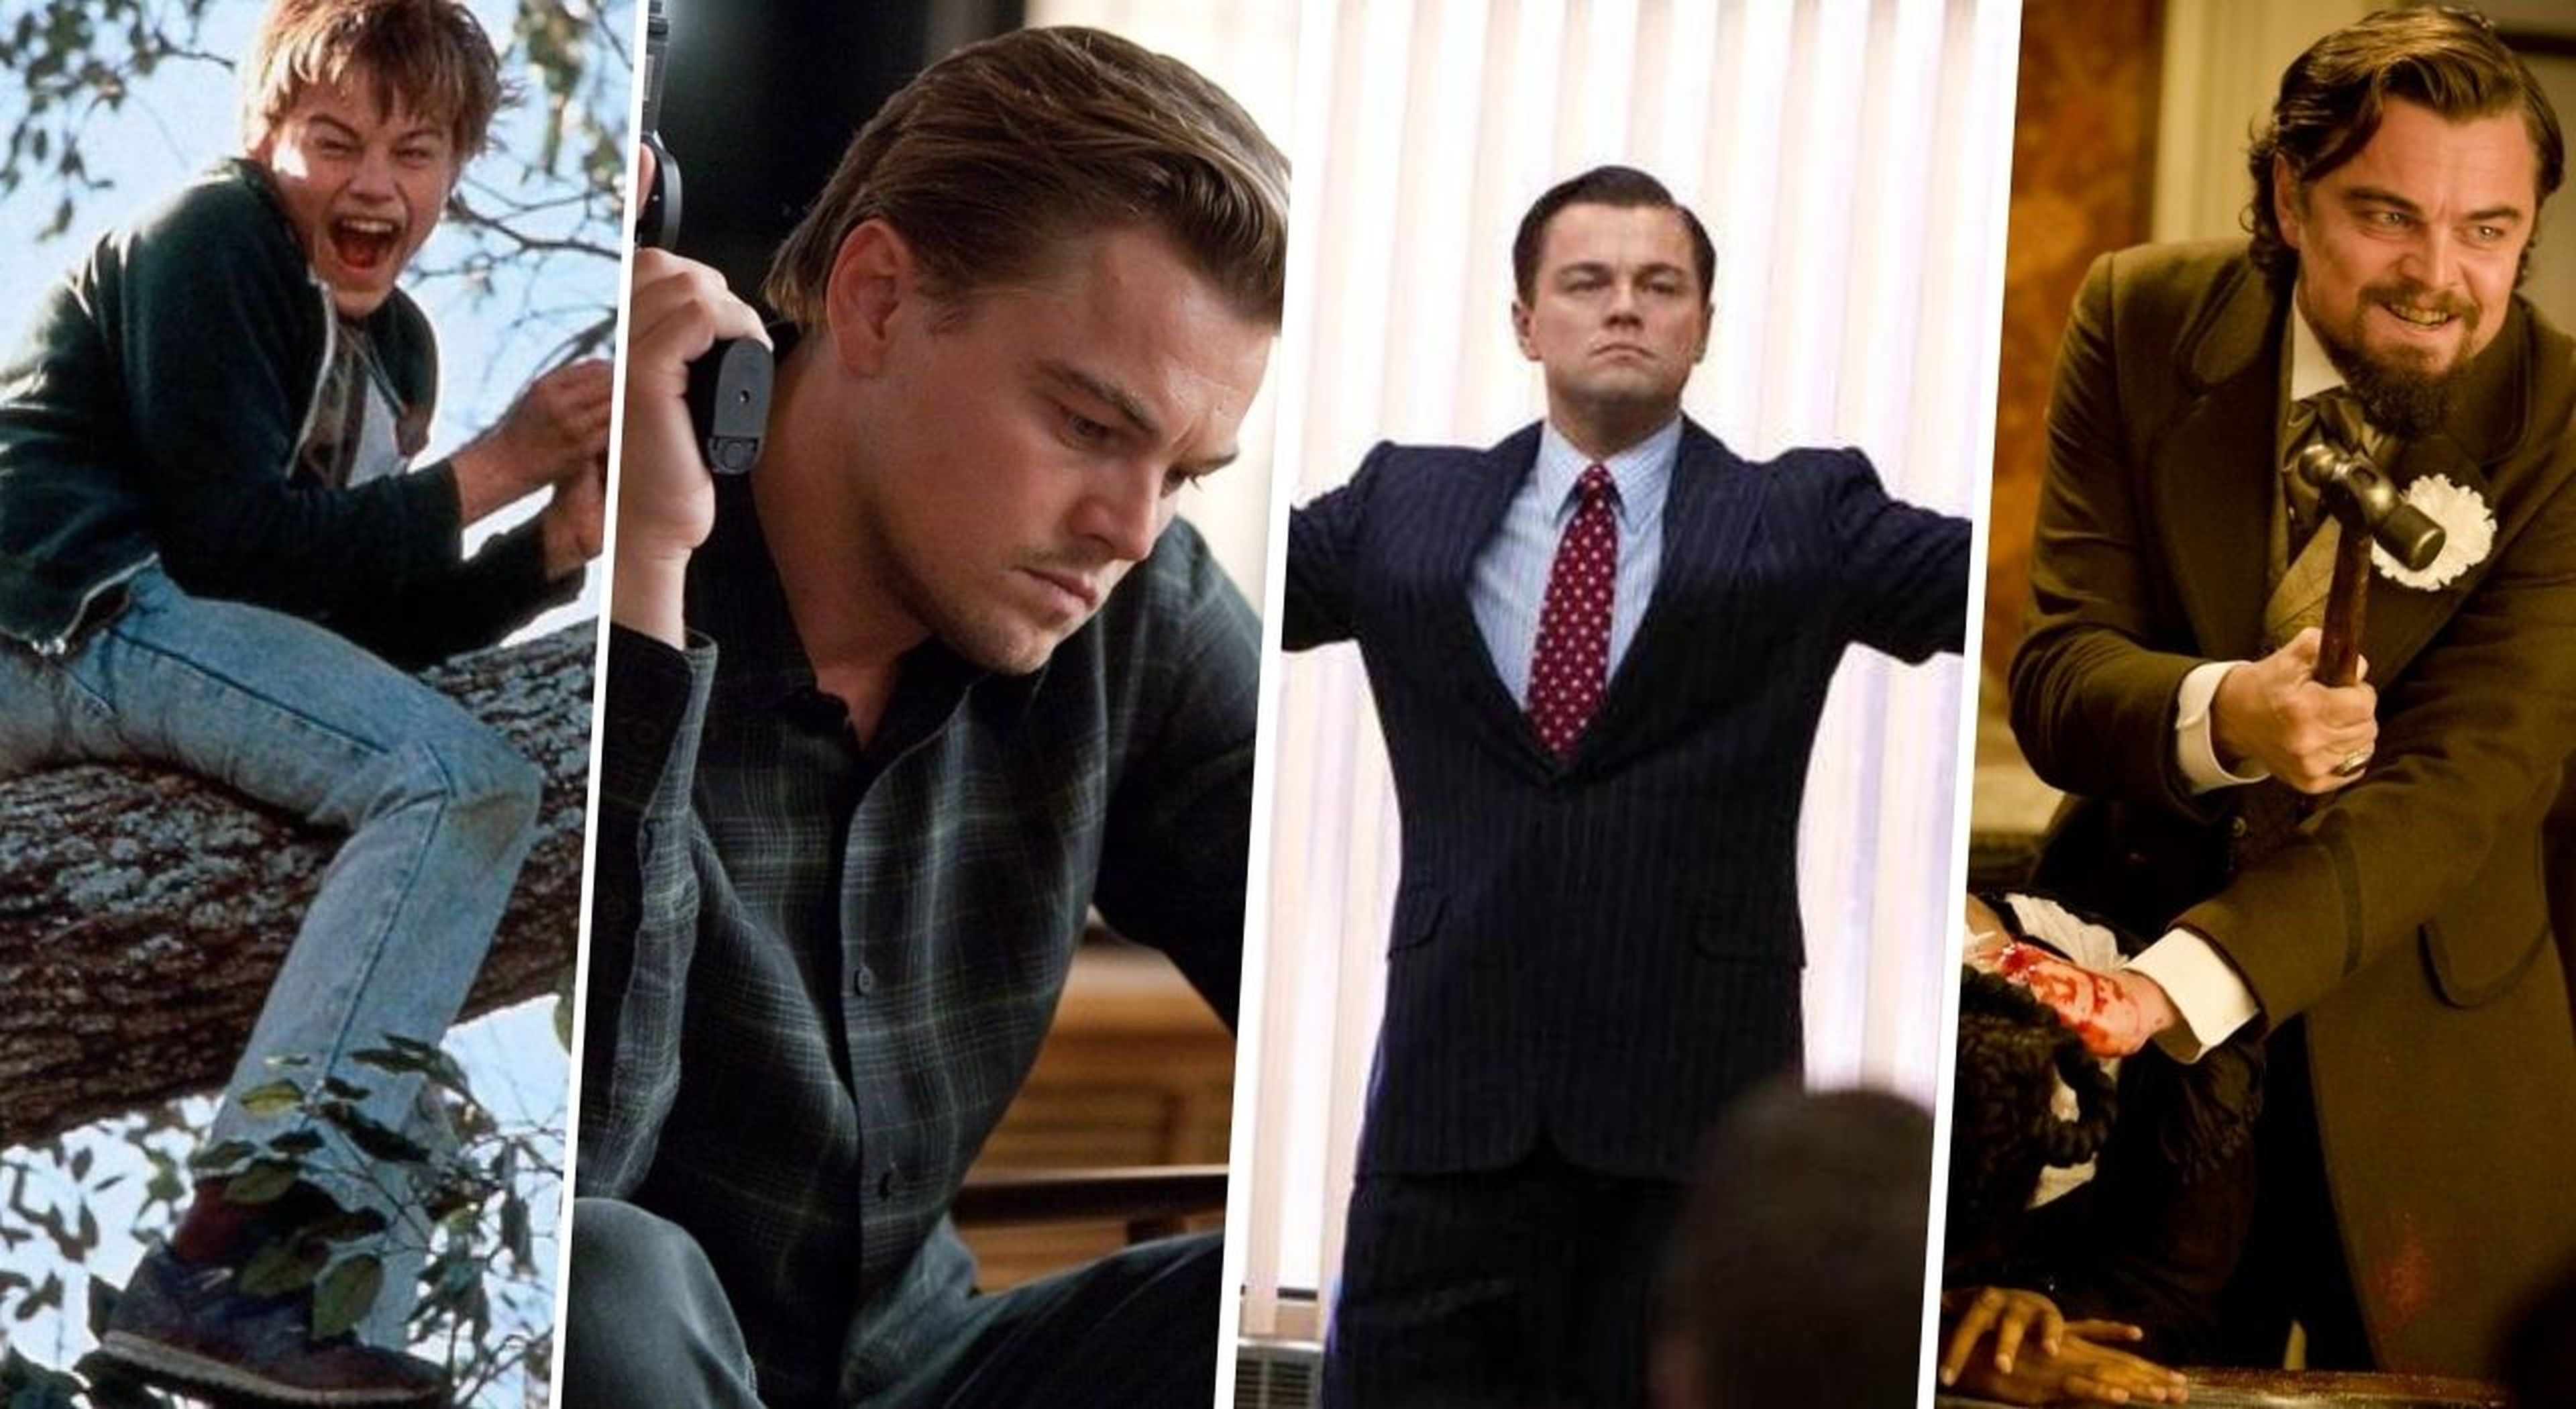 Las 13 mejores películas de Leonardo DiCaprio ordenadas de peor a mejor según la crítica